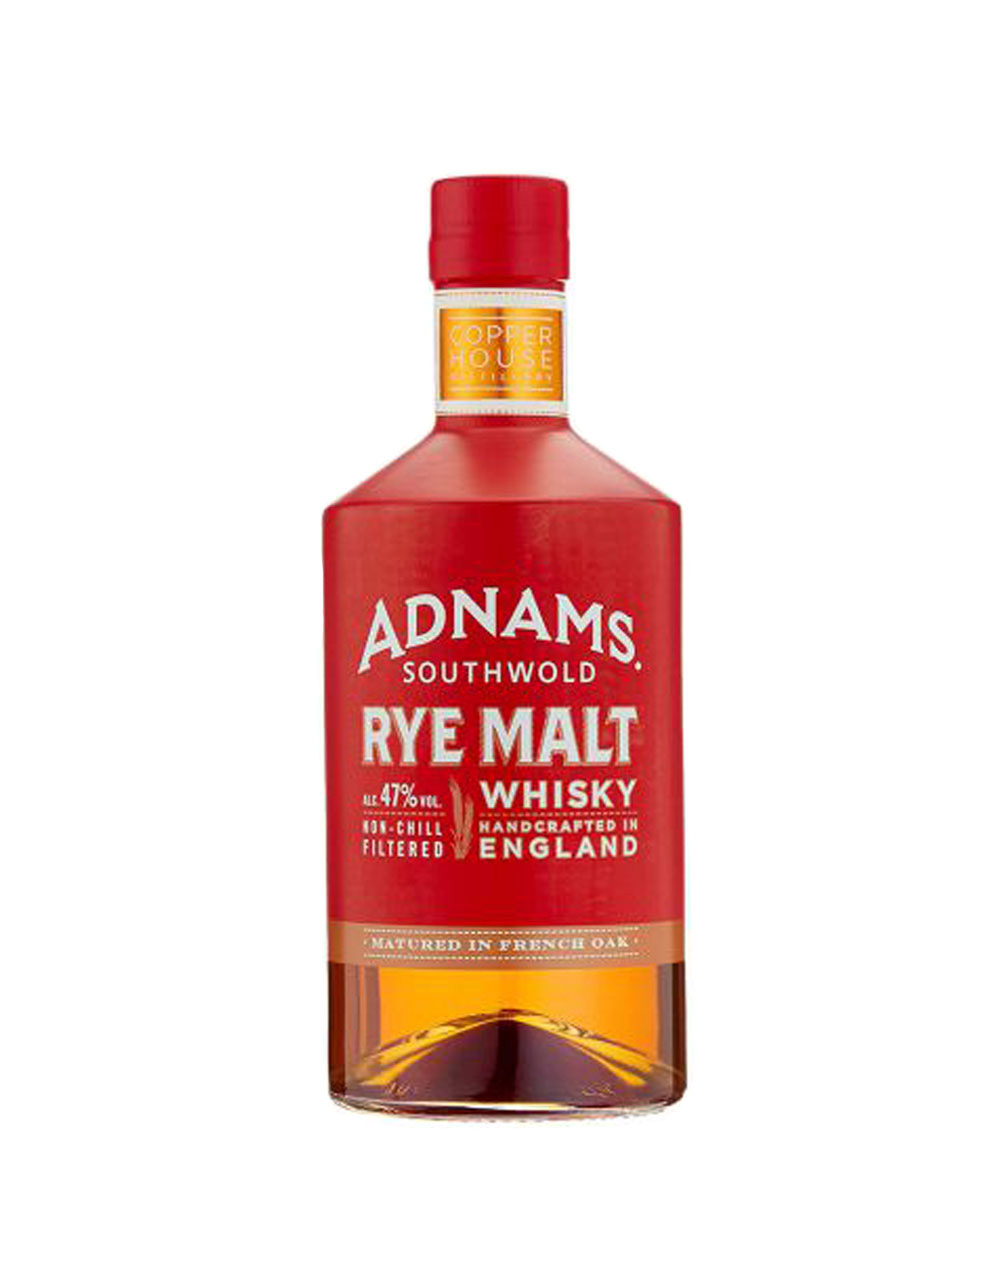 Adnams Rye Malt Whisky